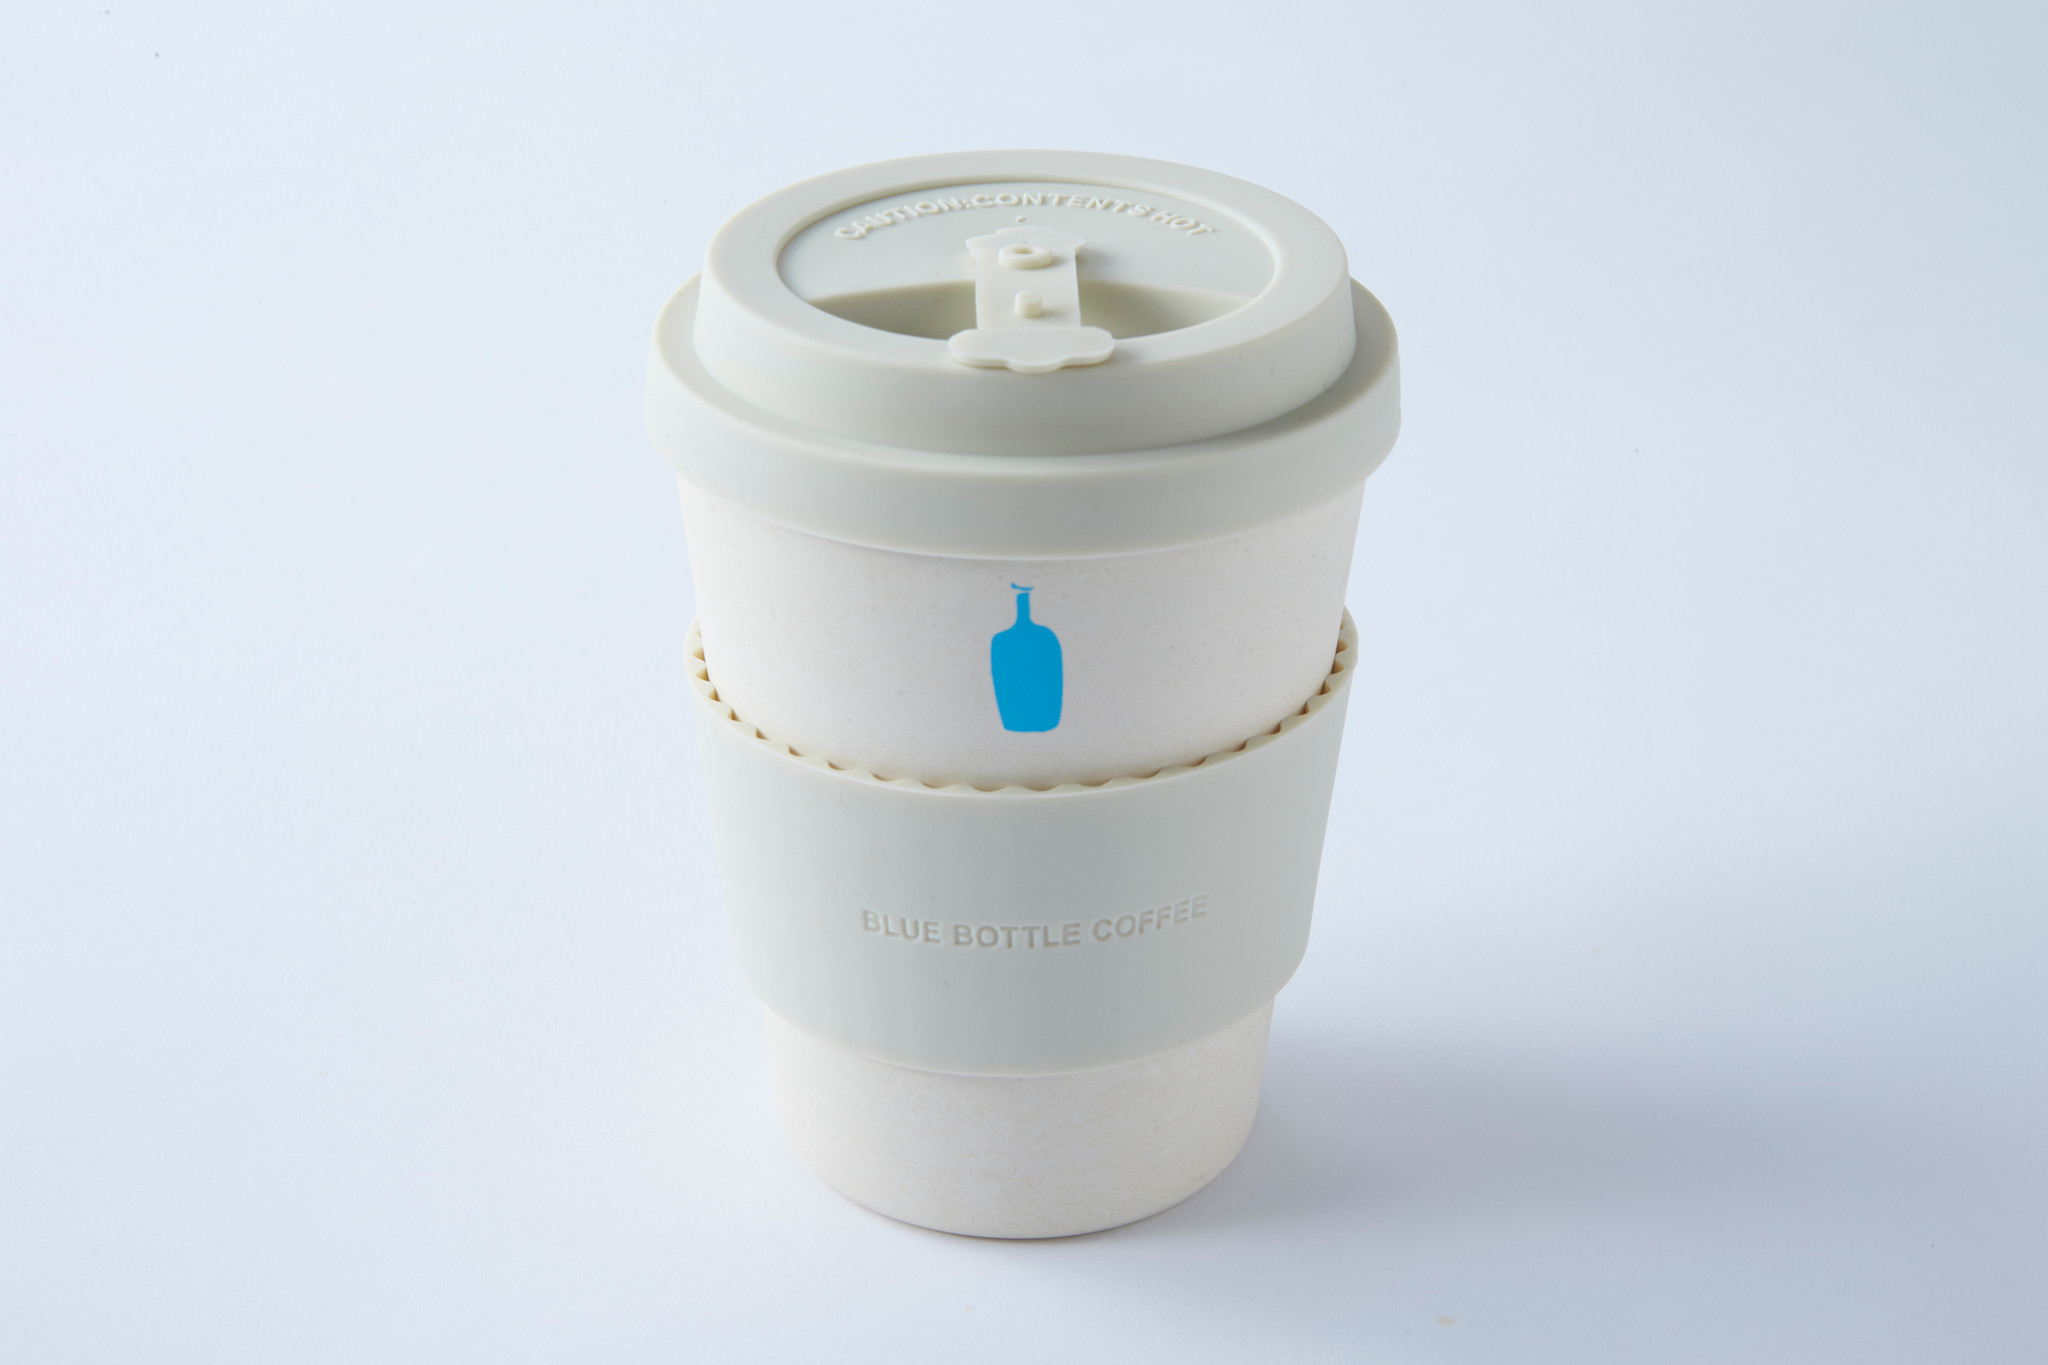 土の中で分解可能なバンブーファイバーを使用した 環境に配慮したエコカップがブルーボトルコーヒーから登場 Blue Bottle Coffee Japan合同会社のプレスリリース